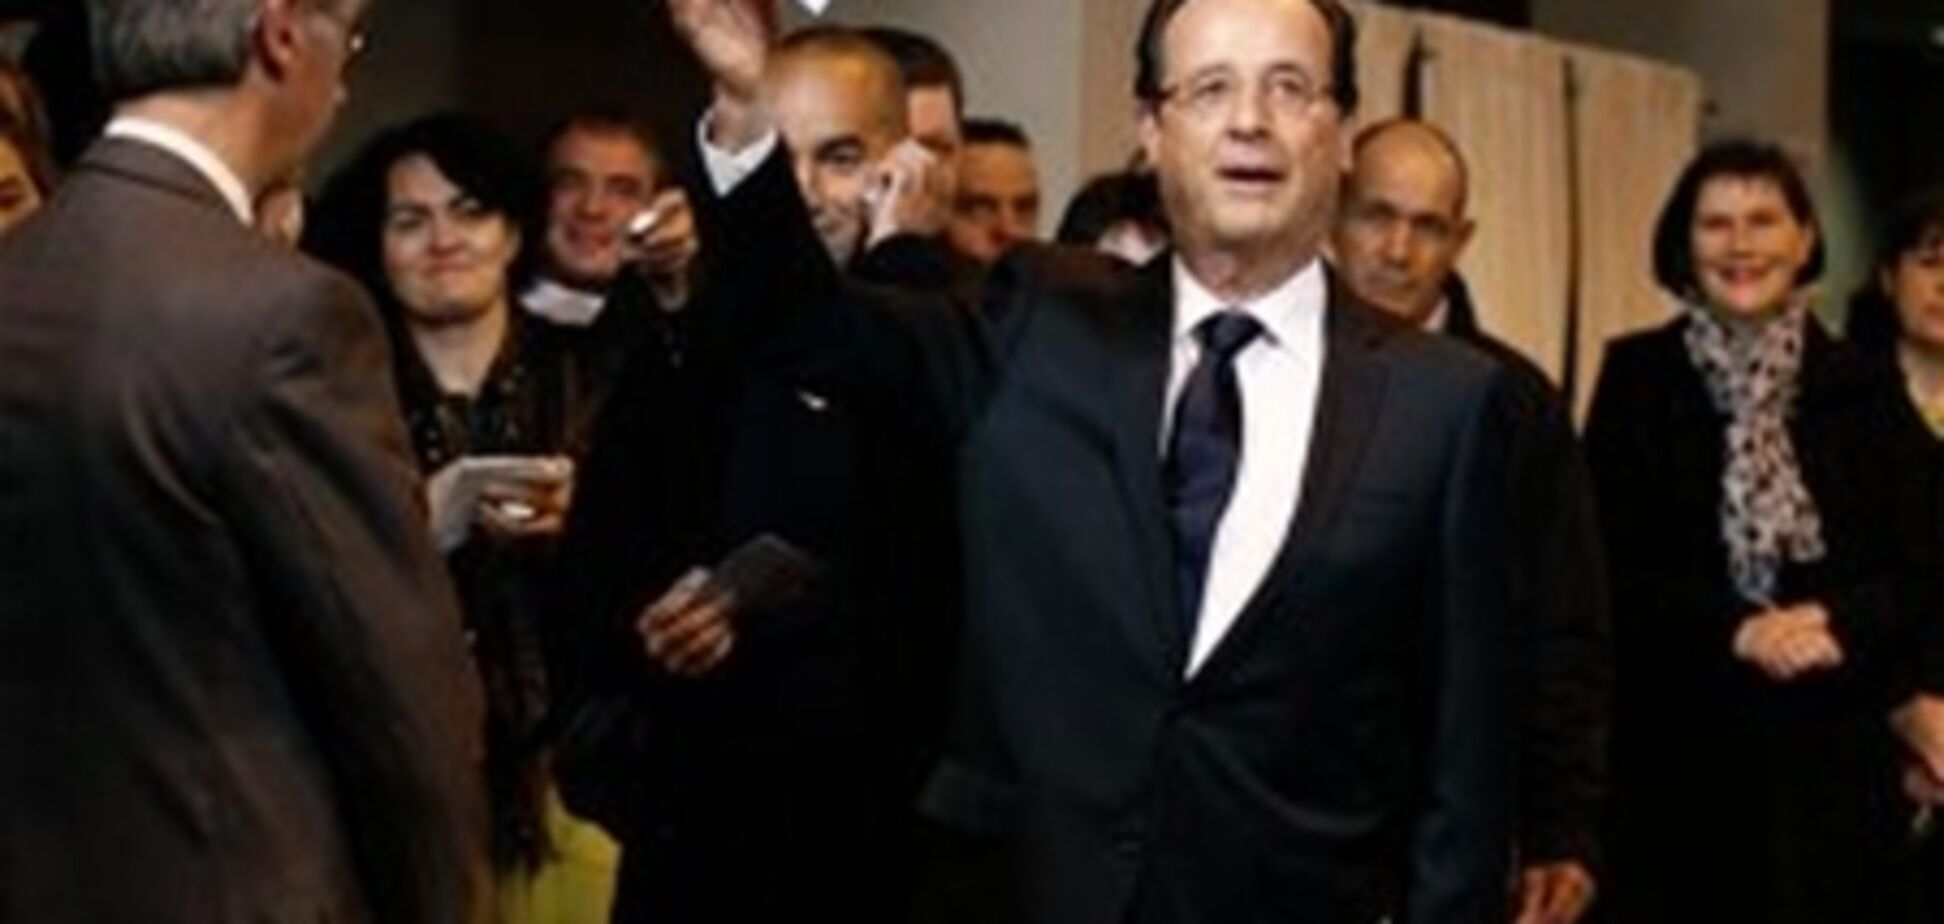 Олланд опережает Саркози во втором туре выборов